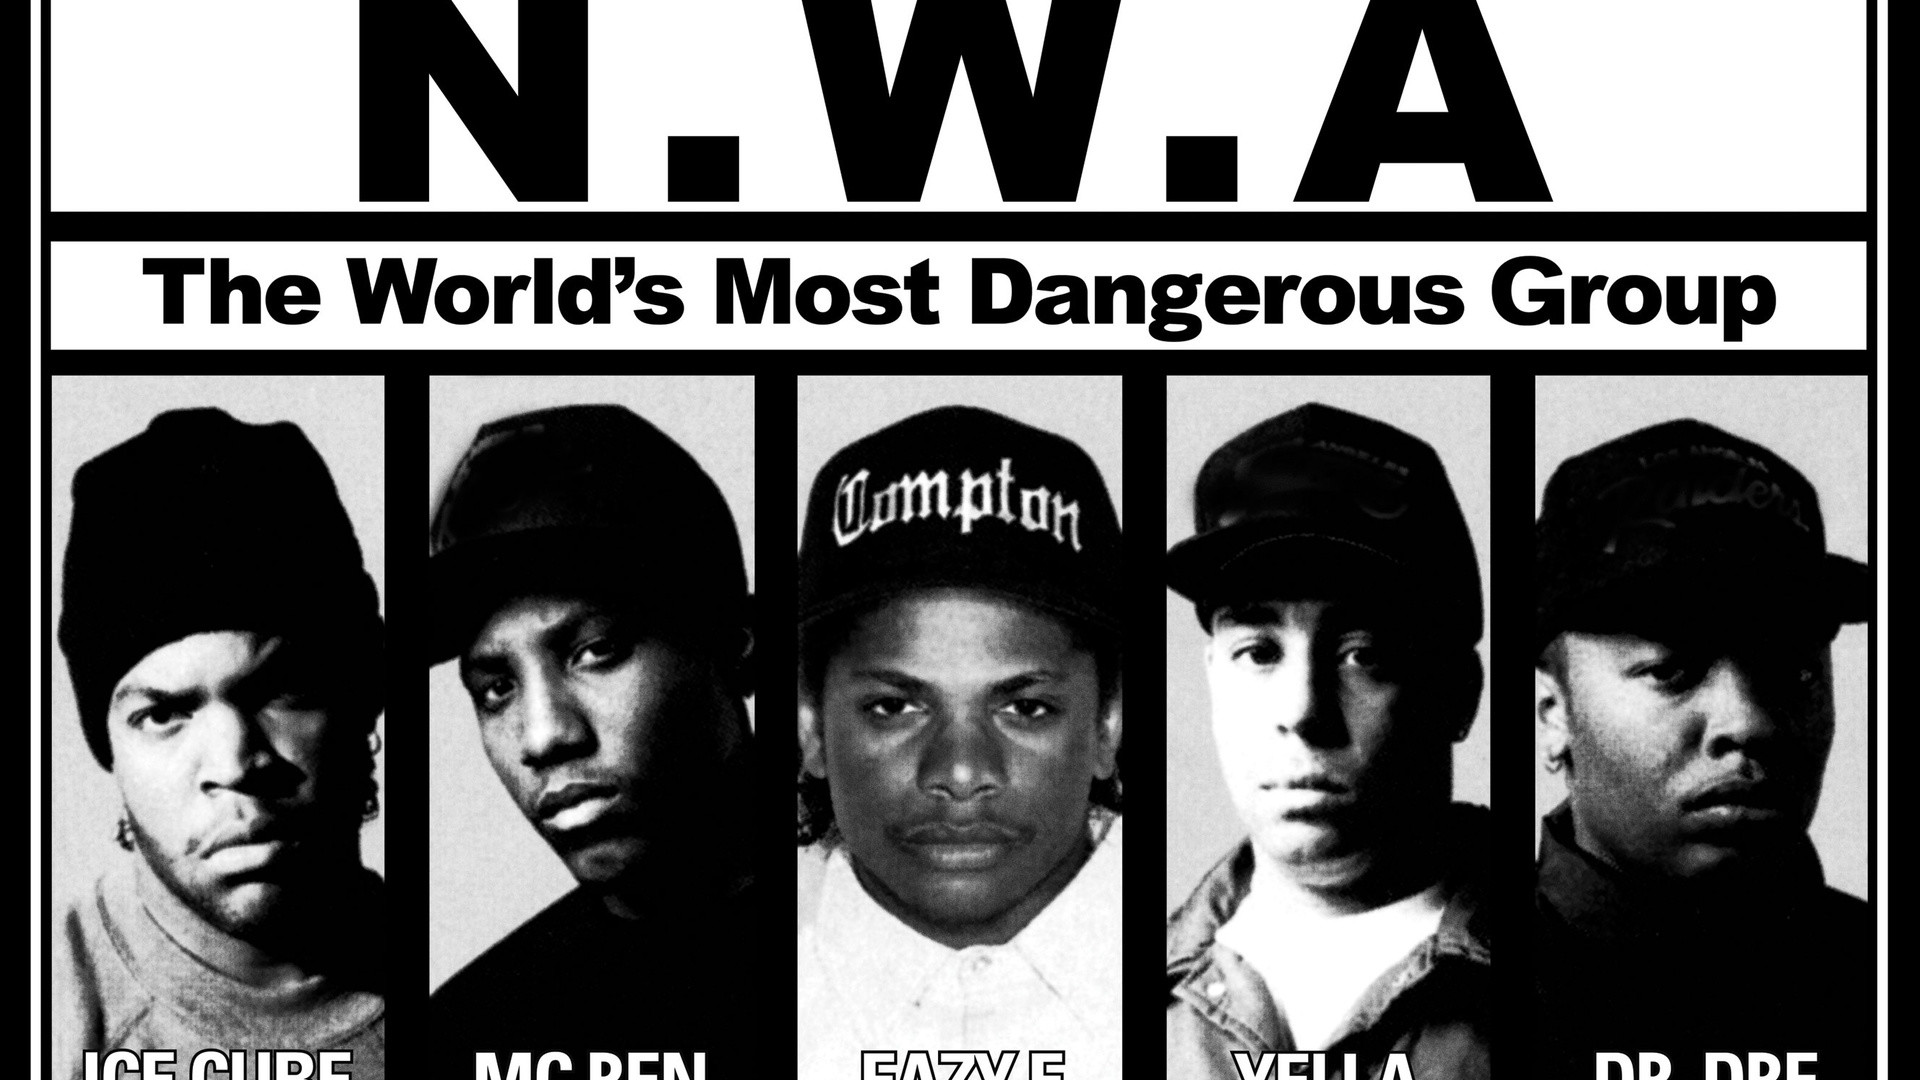 Eazy E nwa gangsta rapper rap hip hop eazye sc wallpaper  1600x1200   181075  WallpaperUP